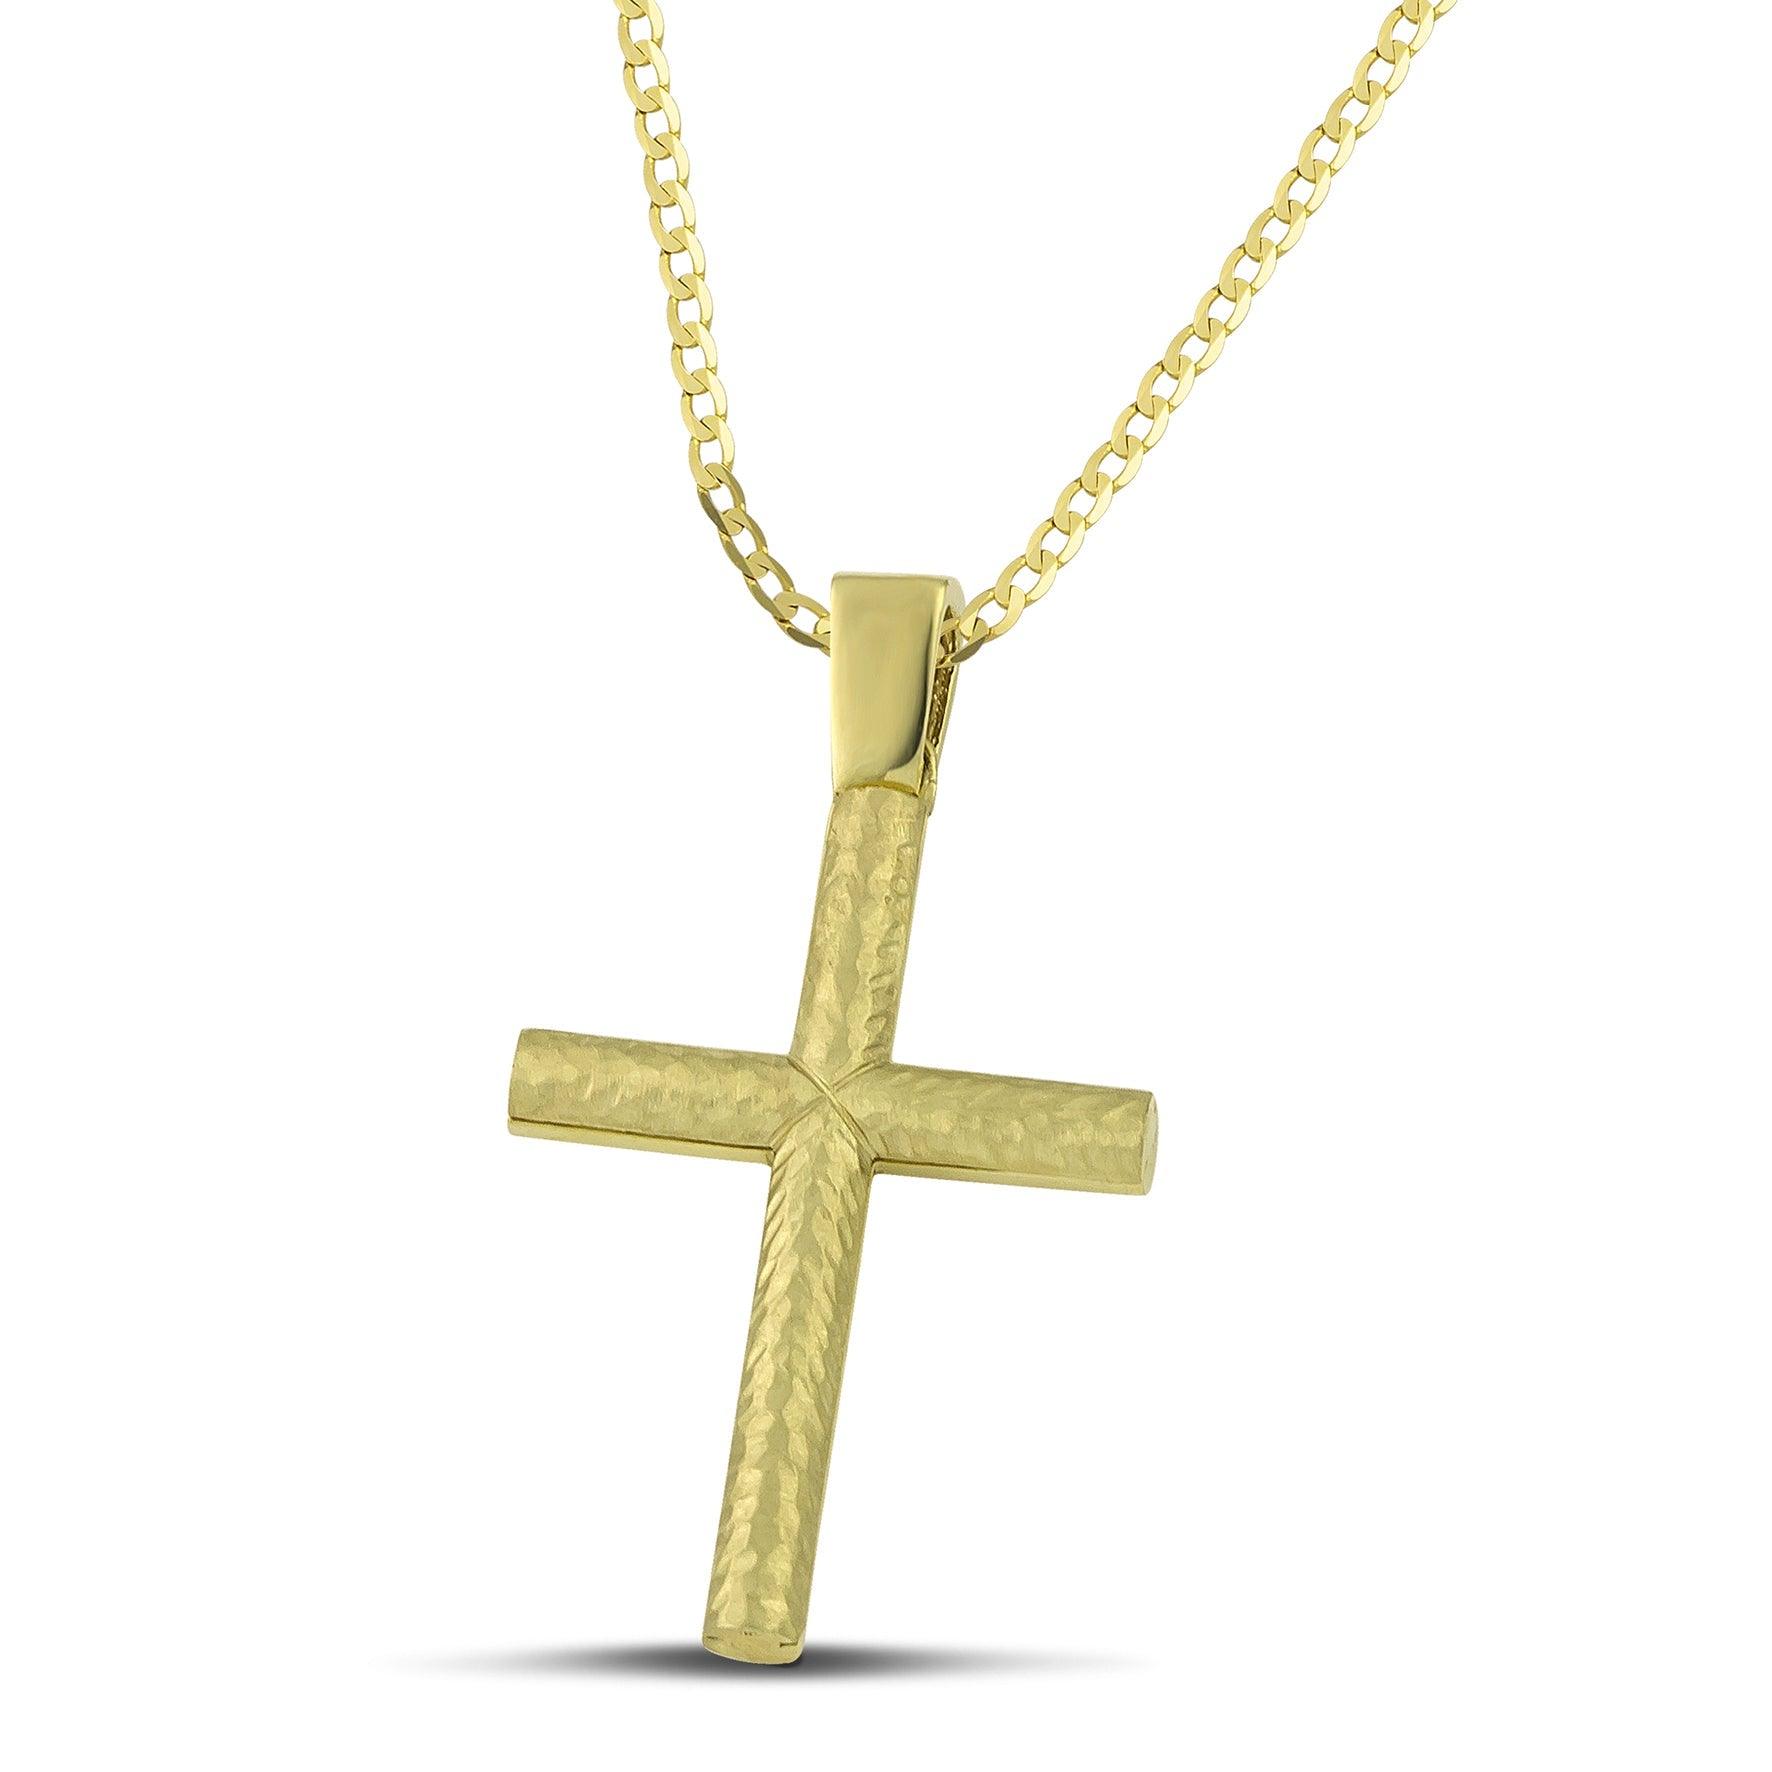 Σταυρός βάπτισης από χρυσό Κ14 για αγόρι, διπλής όψης, με κλασσική αλυσίδα. 